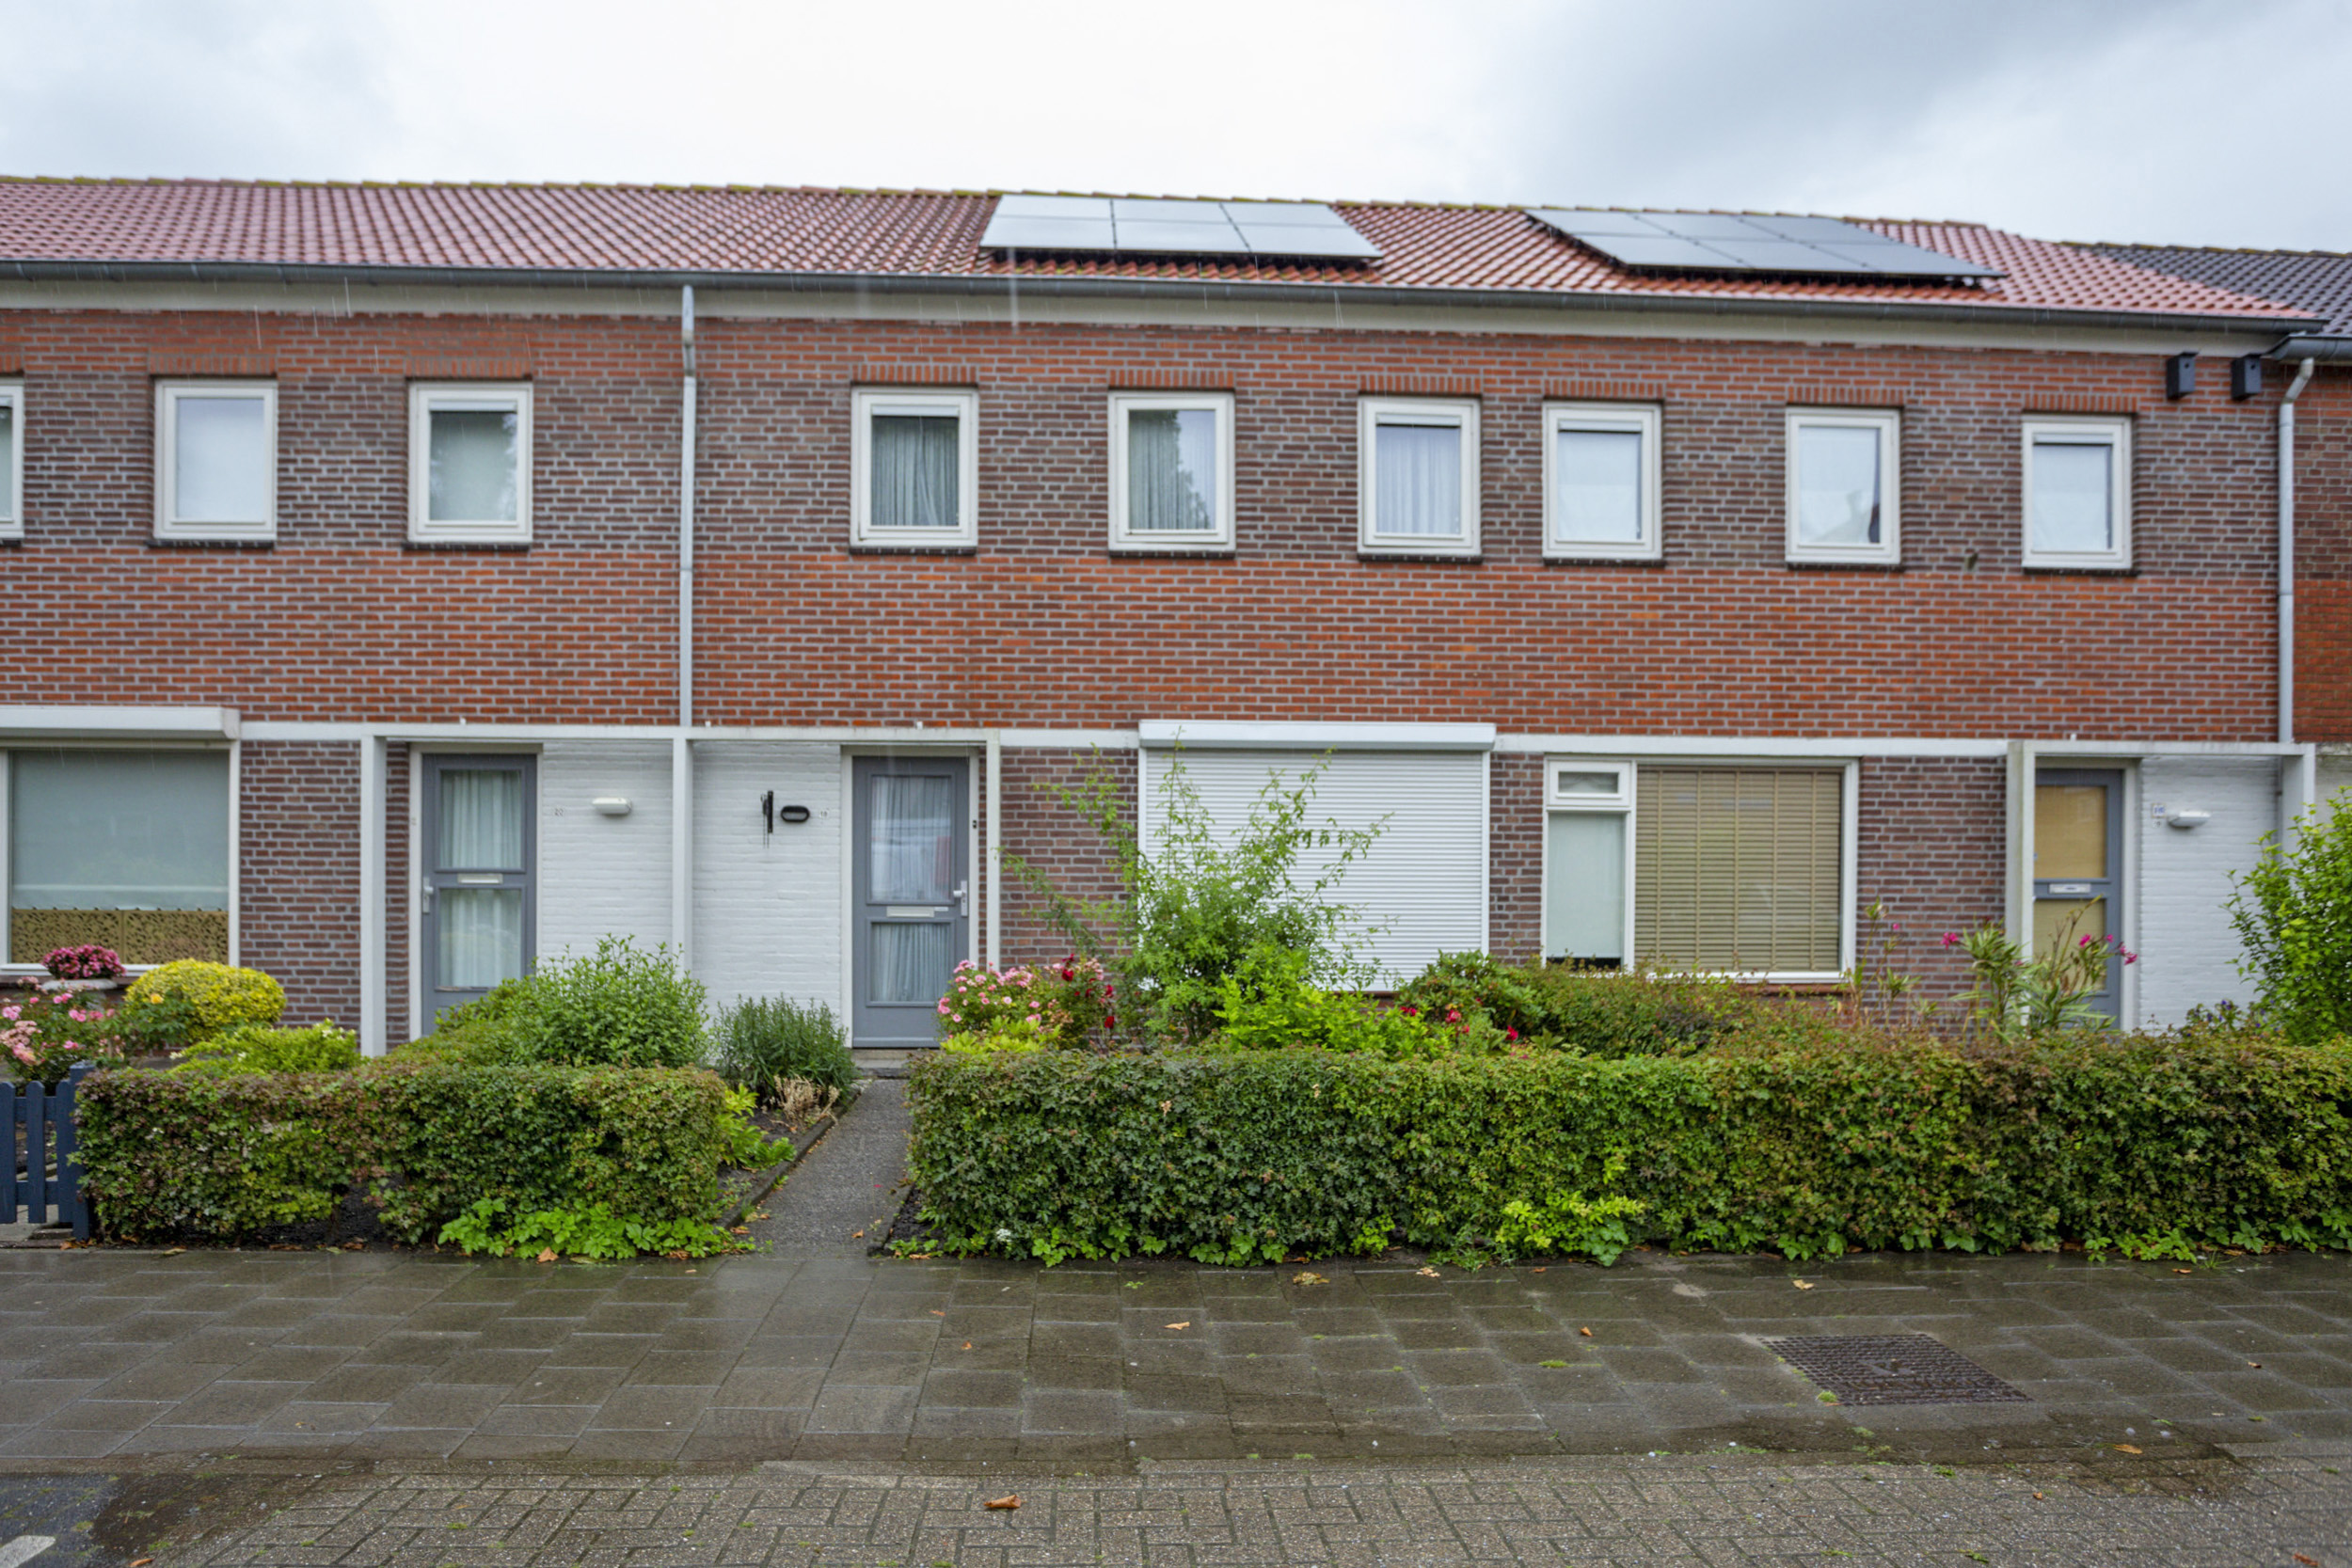 Van Glymesstraat 18, 4761 JV Zevenbergen, Nederland